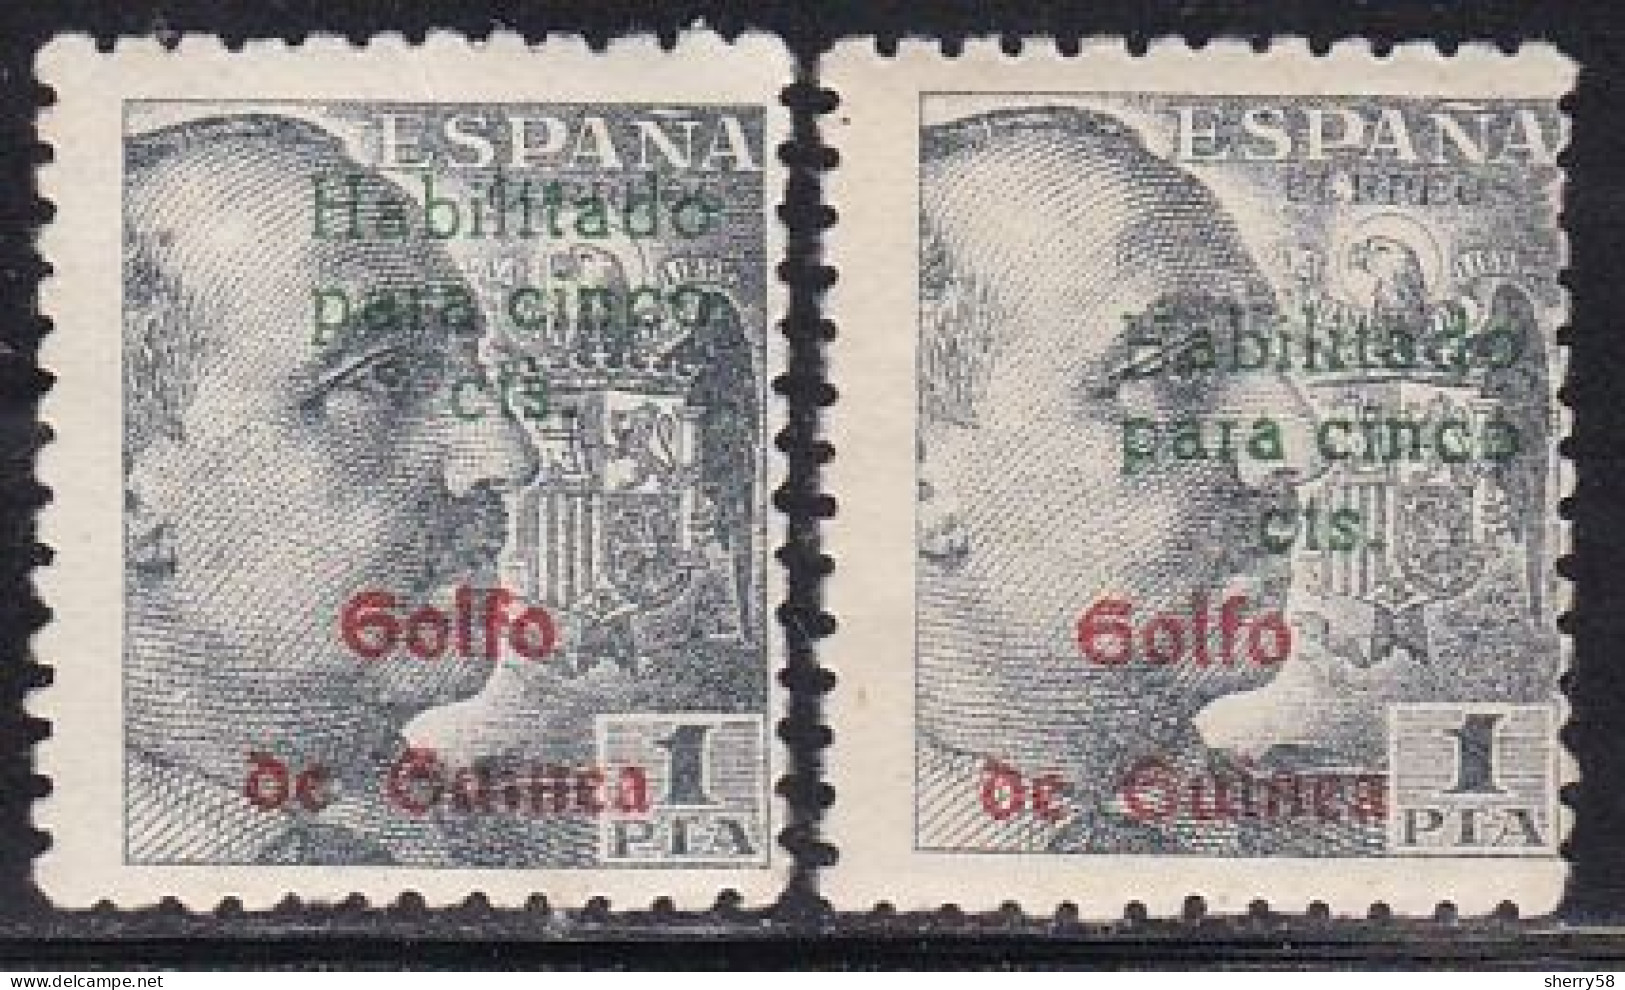 GUINEA ESPAÑOLA-1949-ED. 273A SELLOS DE ESPAÑA HABILITADOS. GENERAL FRANCO -2 Ejemplares. Uno Con Habilitación Desplazad - Guinea Espagnole